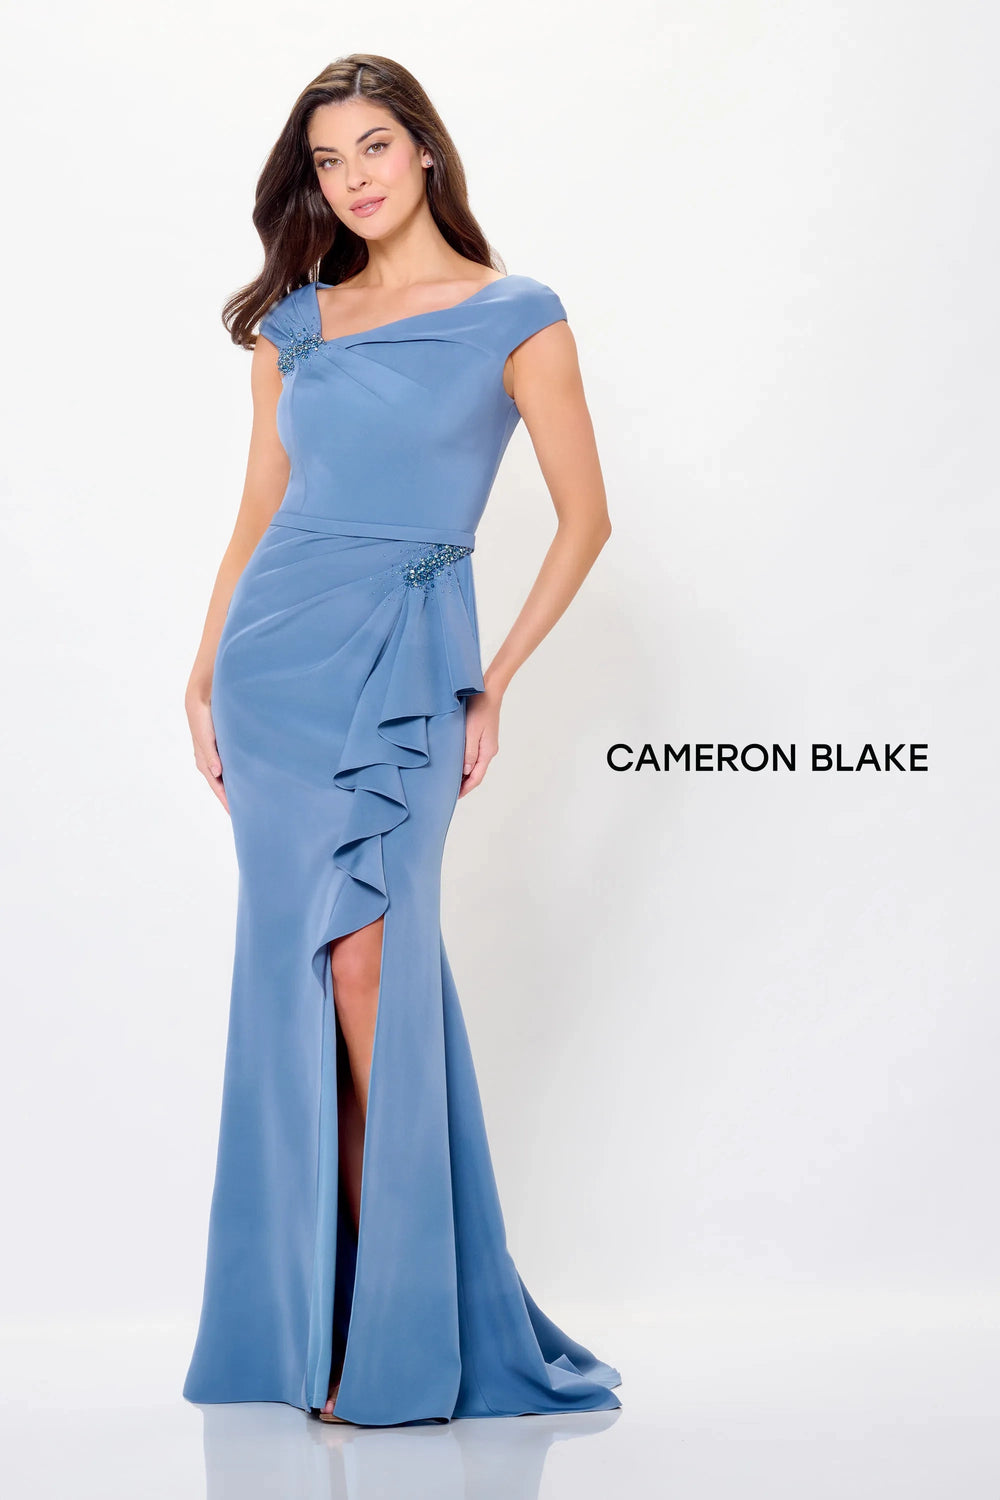 Mon Cheri Cameron Blake Dress Mon Cheri Cameron Blake CB3232 Dress